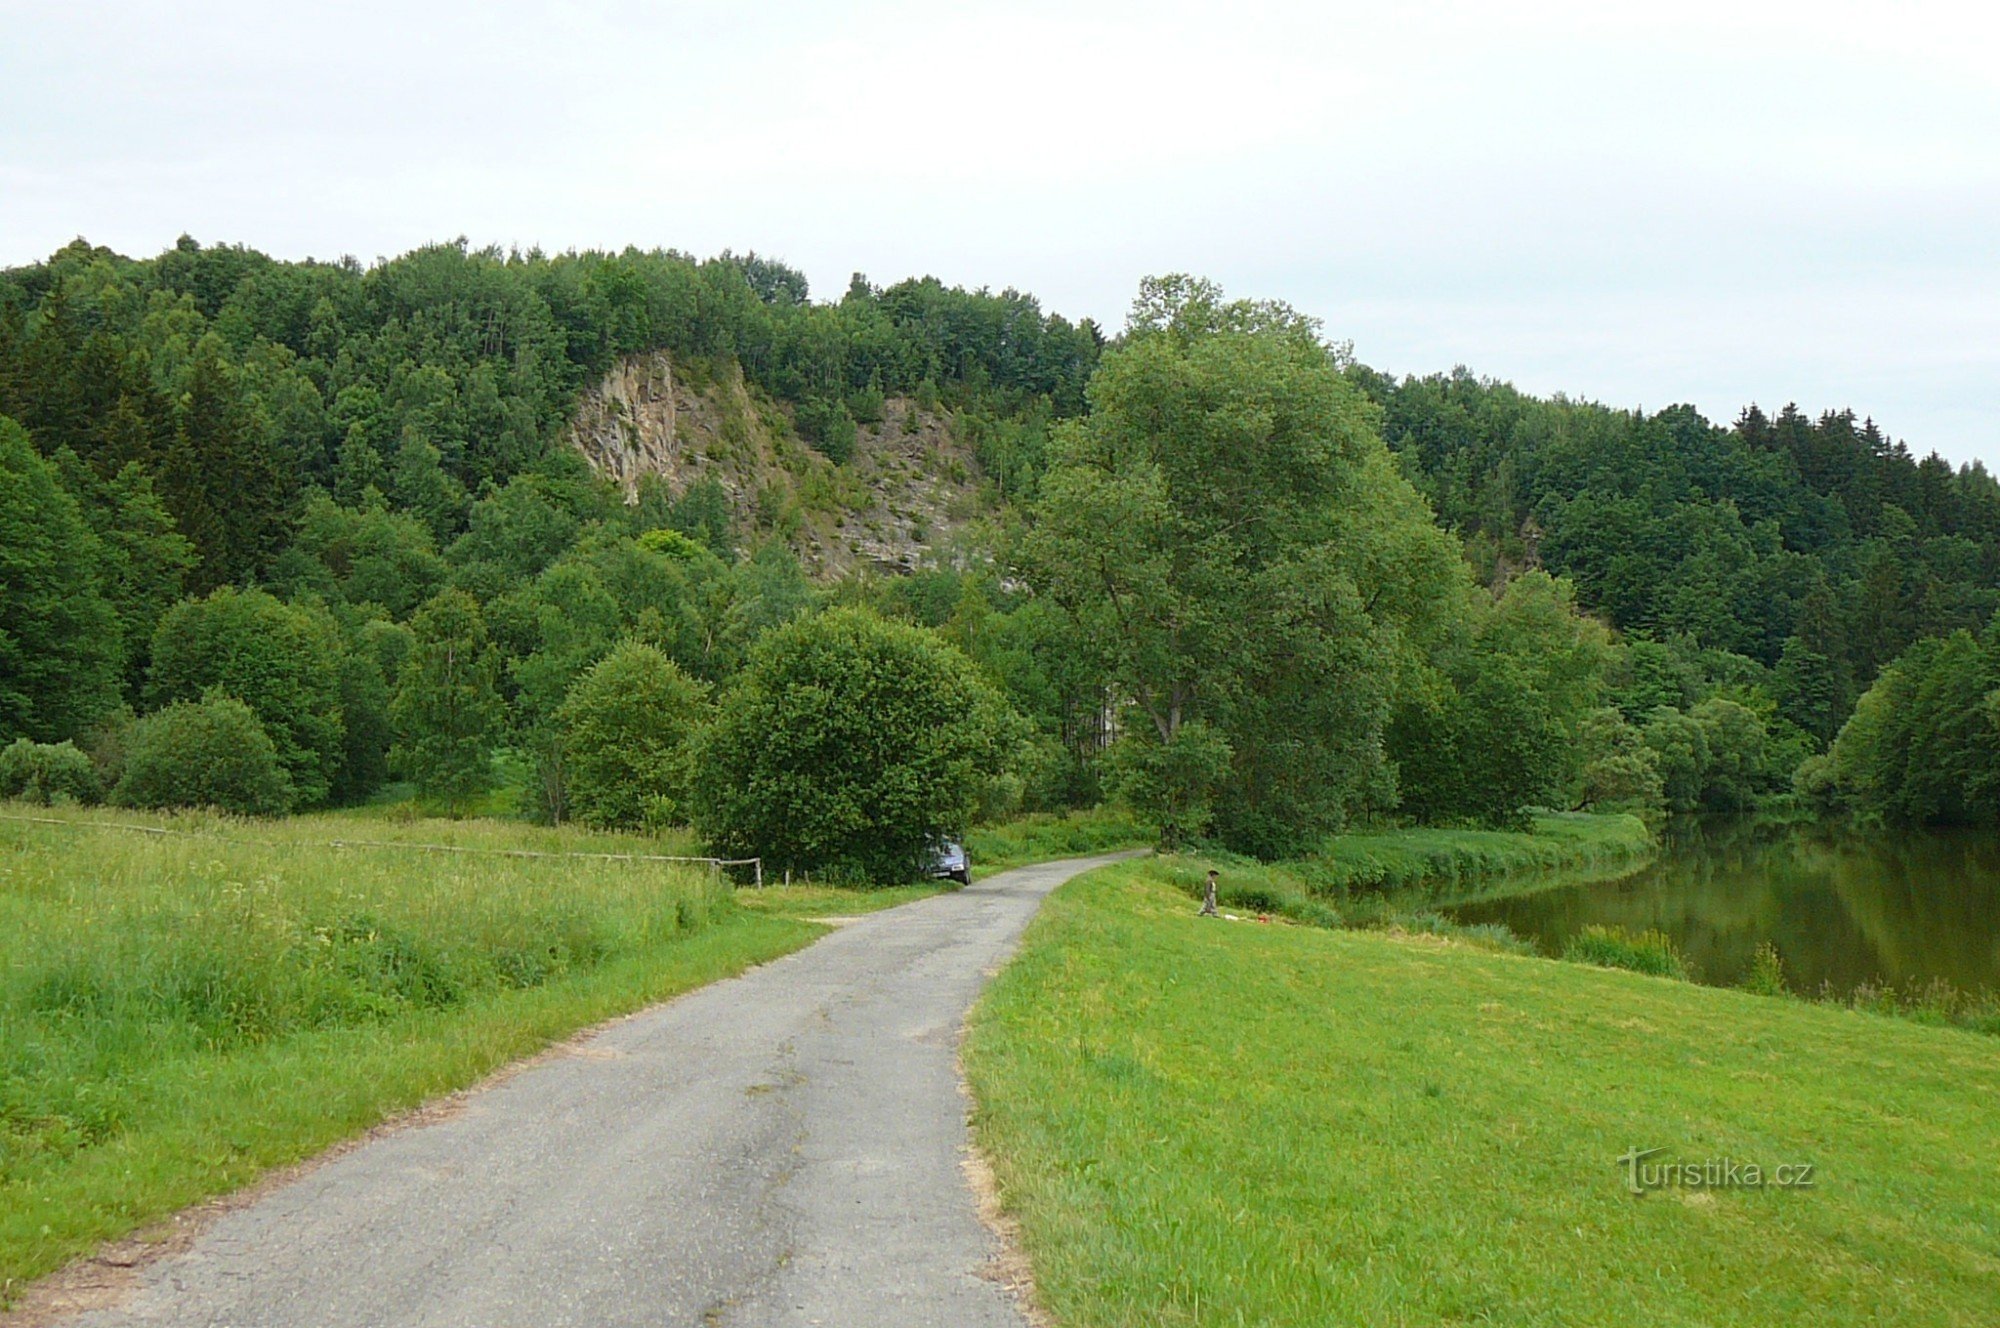 Intersecția a fost numită după cariera din apropiere de lângă râul Sázava